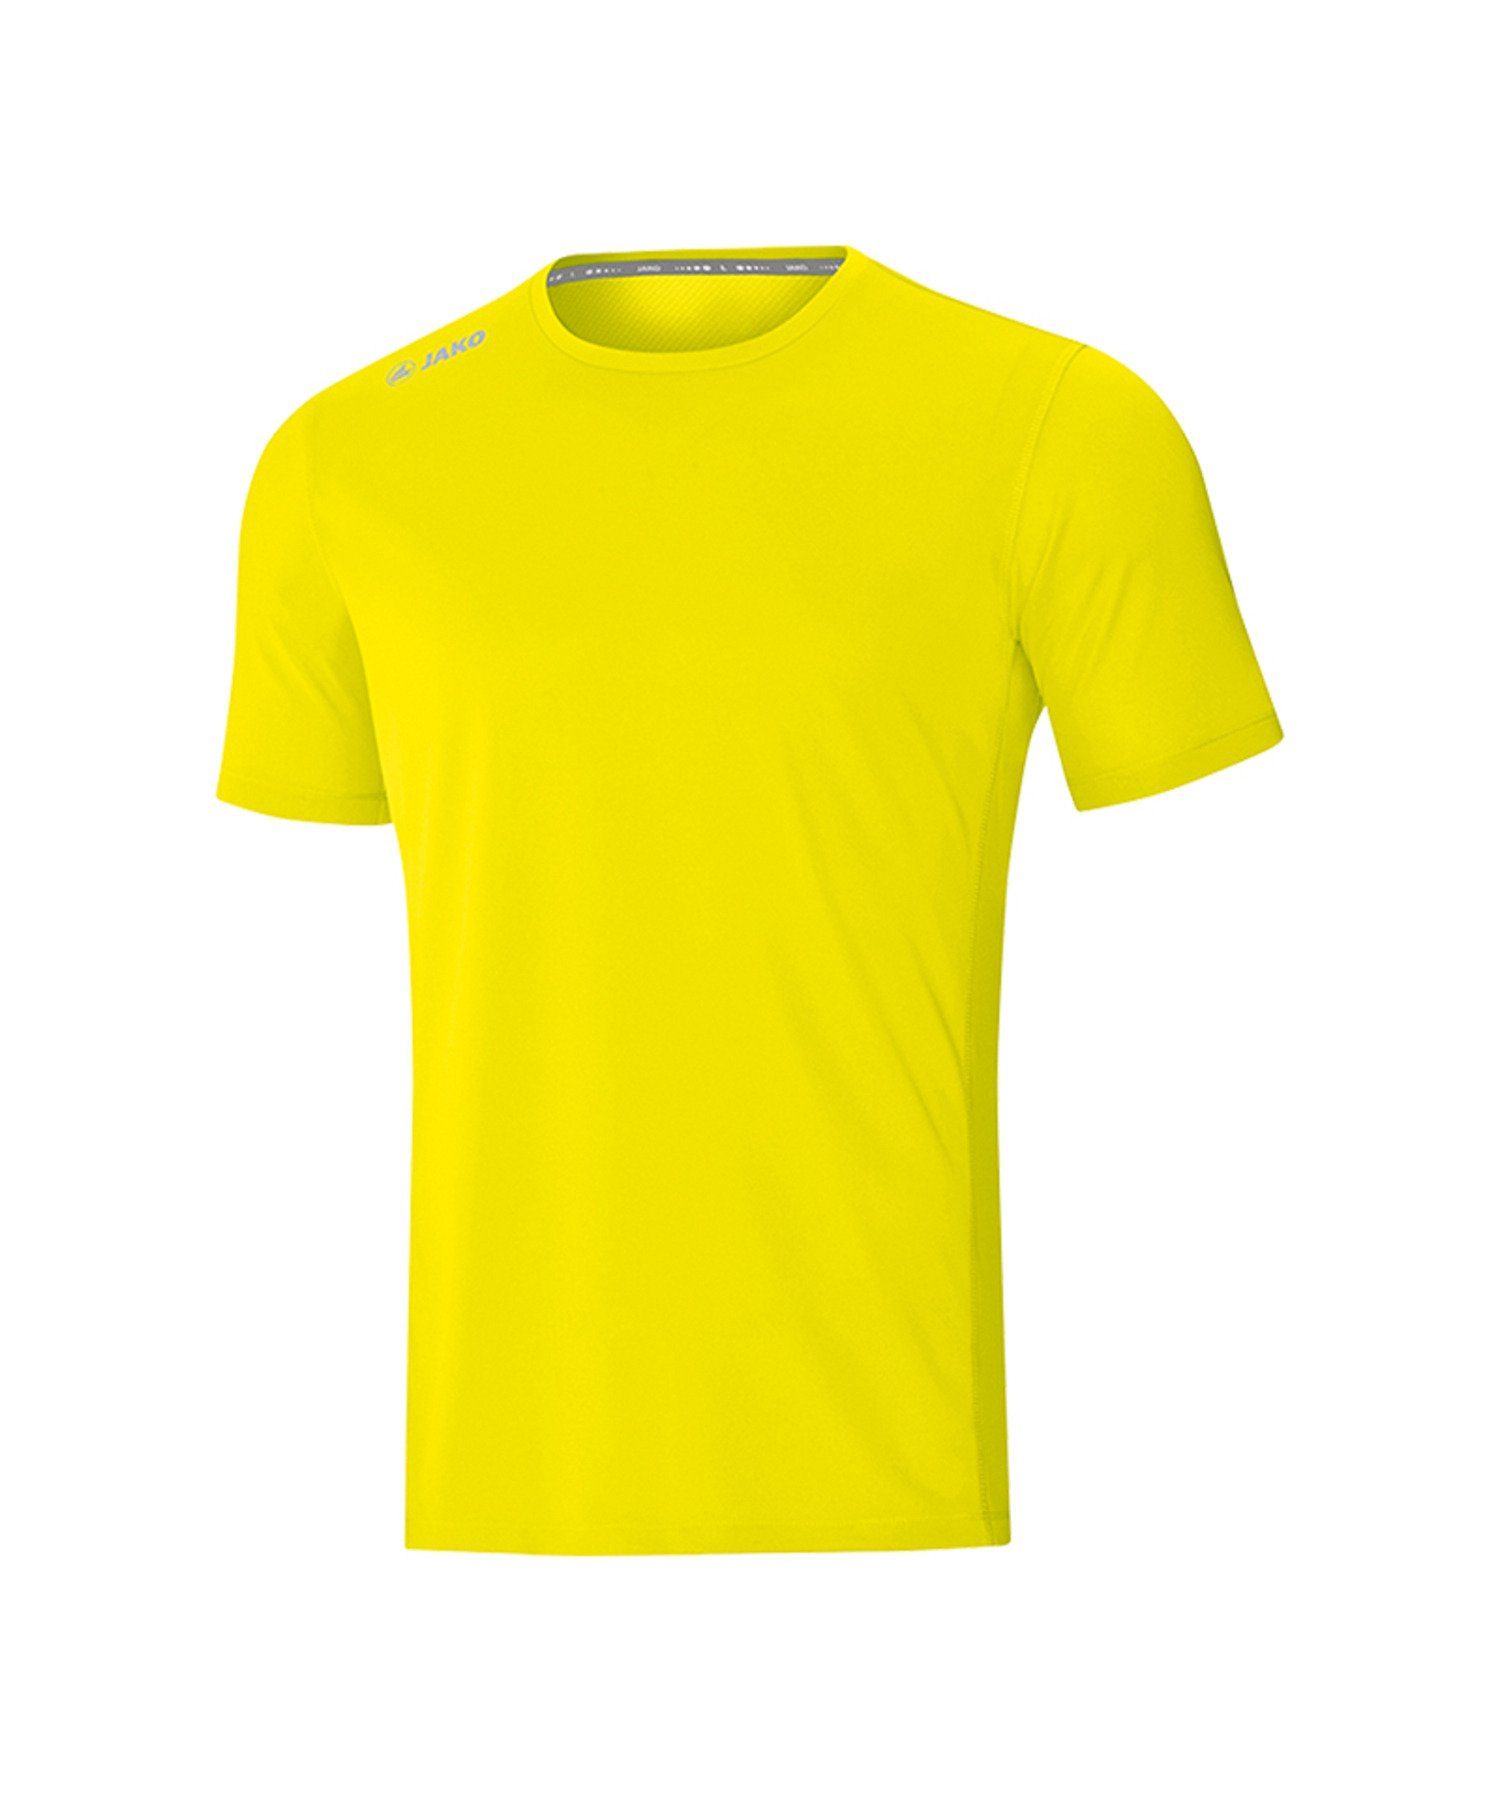 Jako T-Shirt Run T-Shirt 2.0 Gelb default Running